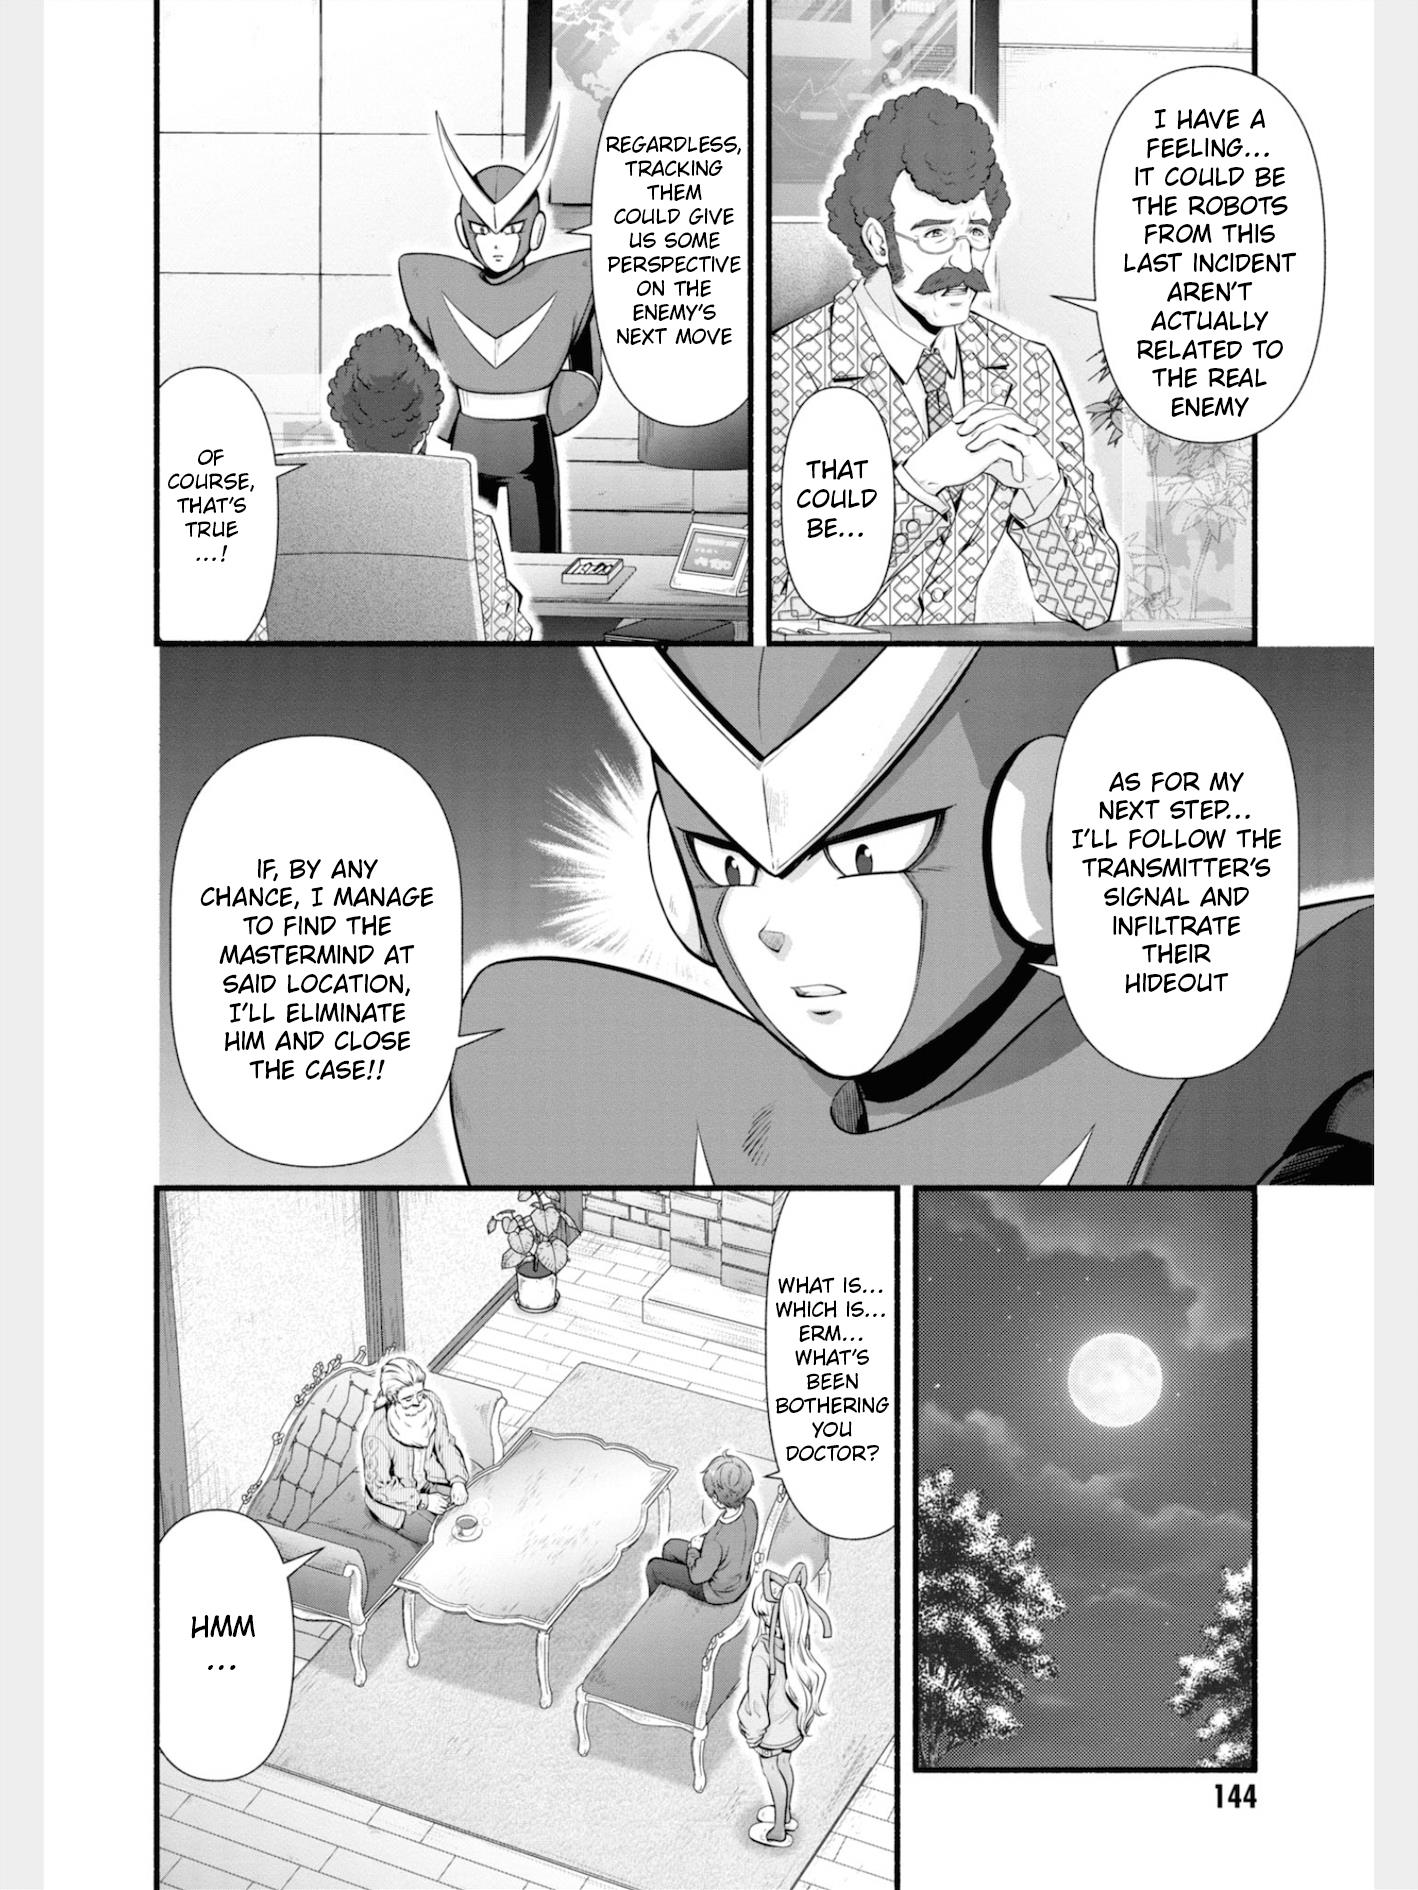 Rockman-San - Page 4